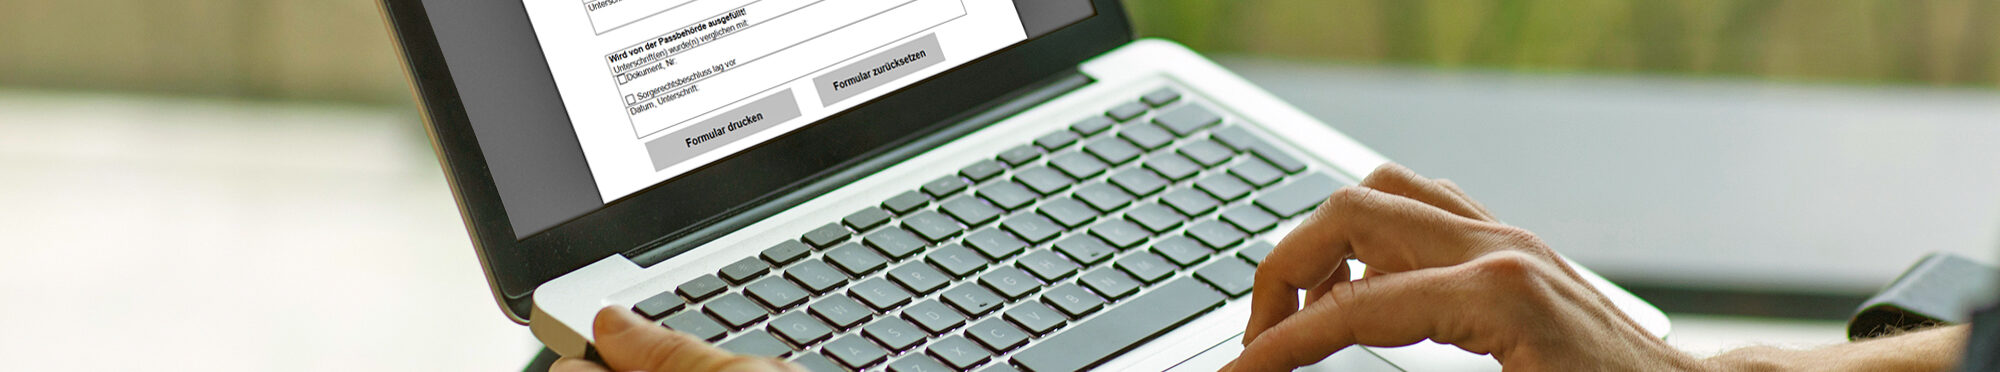 Laptop auf Schoß mit geöffnetem Internet-Formular auf dem Bildschirm